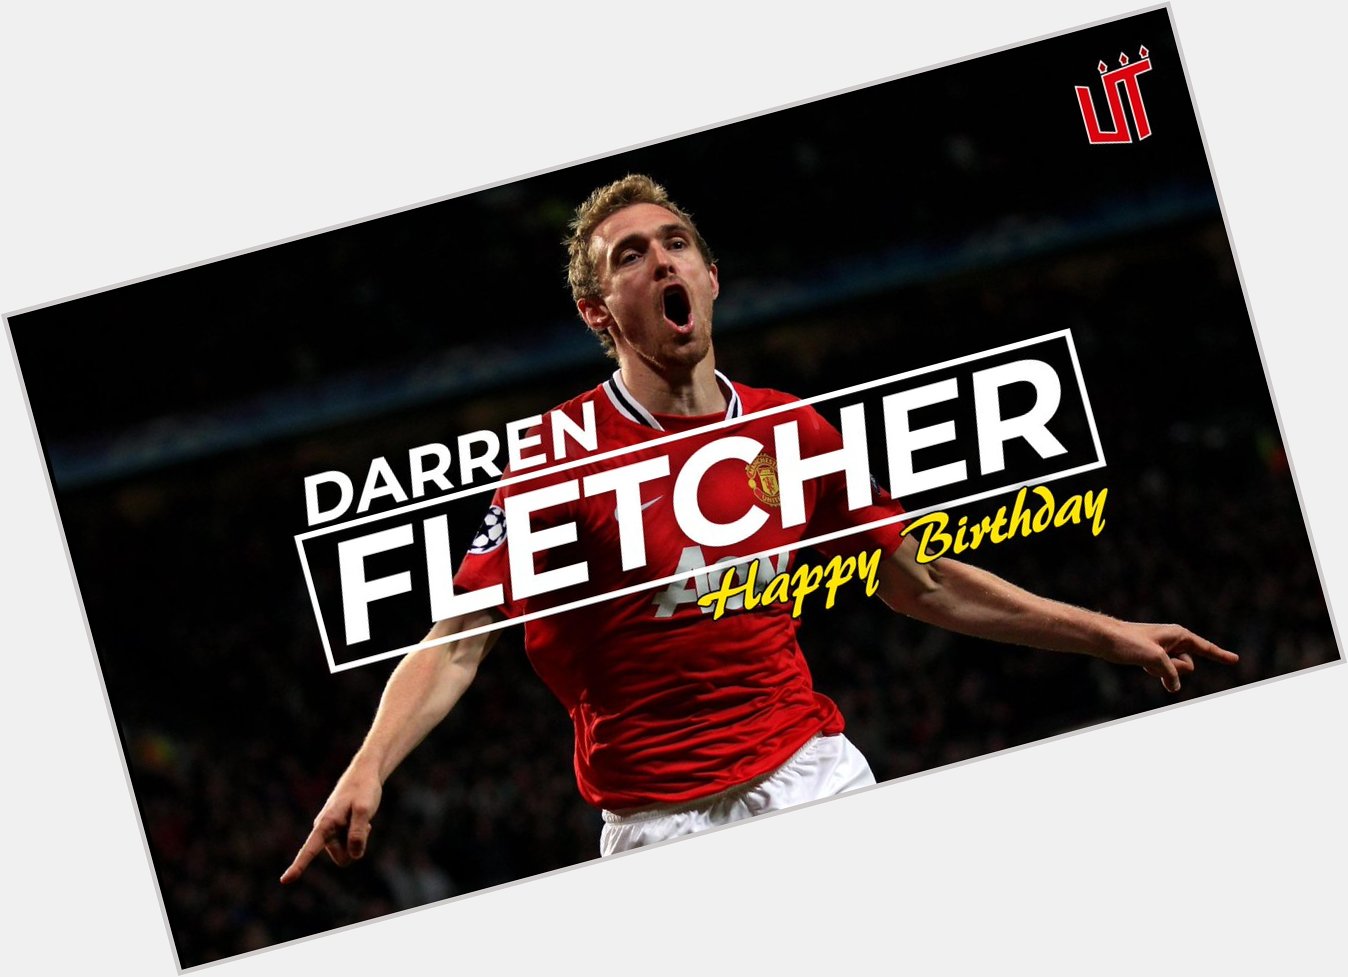 Happy birthday to Darren Fletcher!  